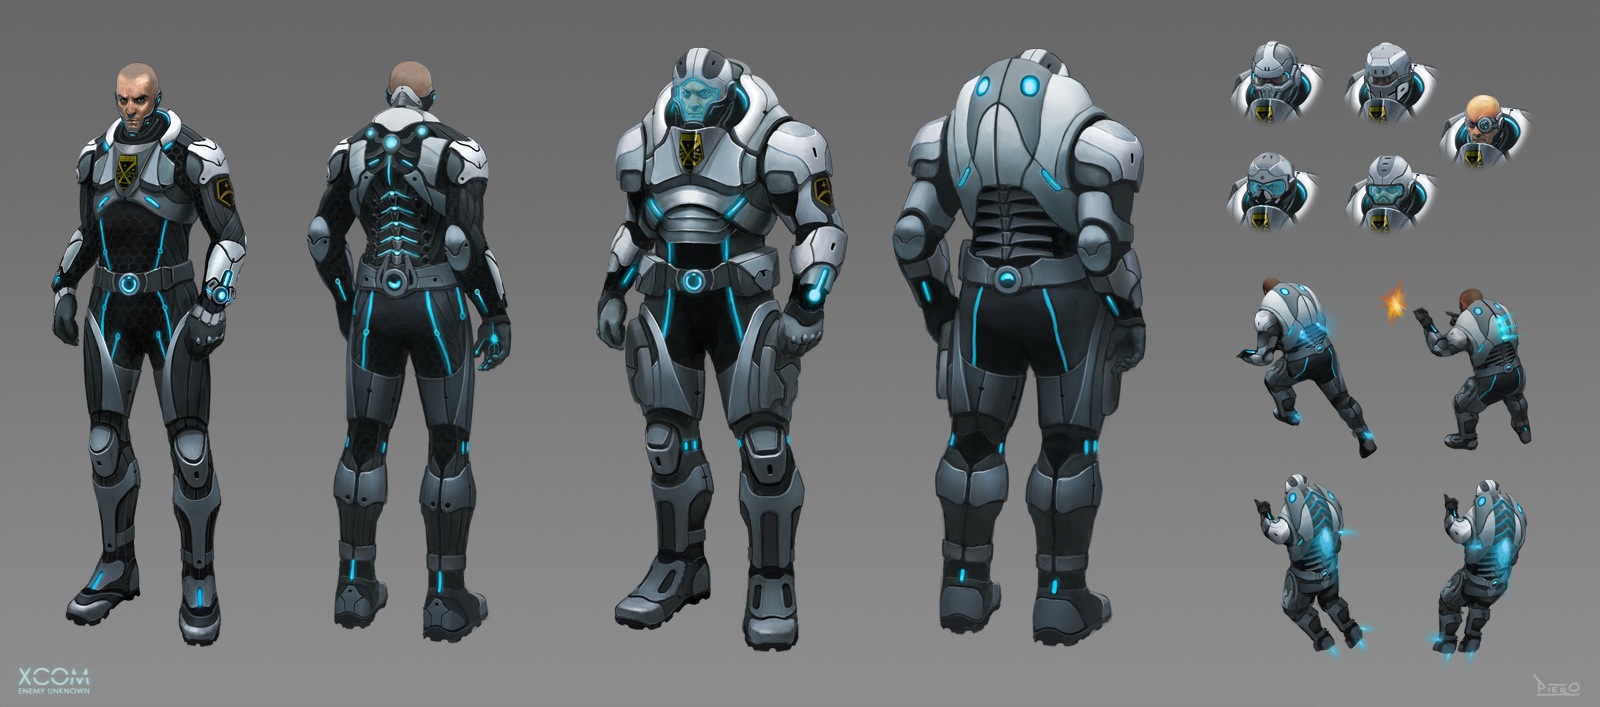 xcom 2 experimental armor